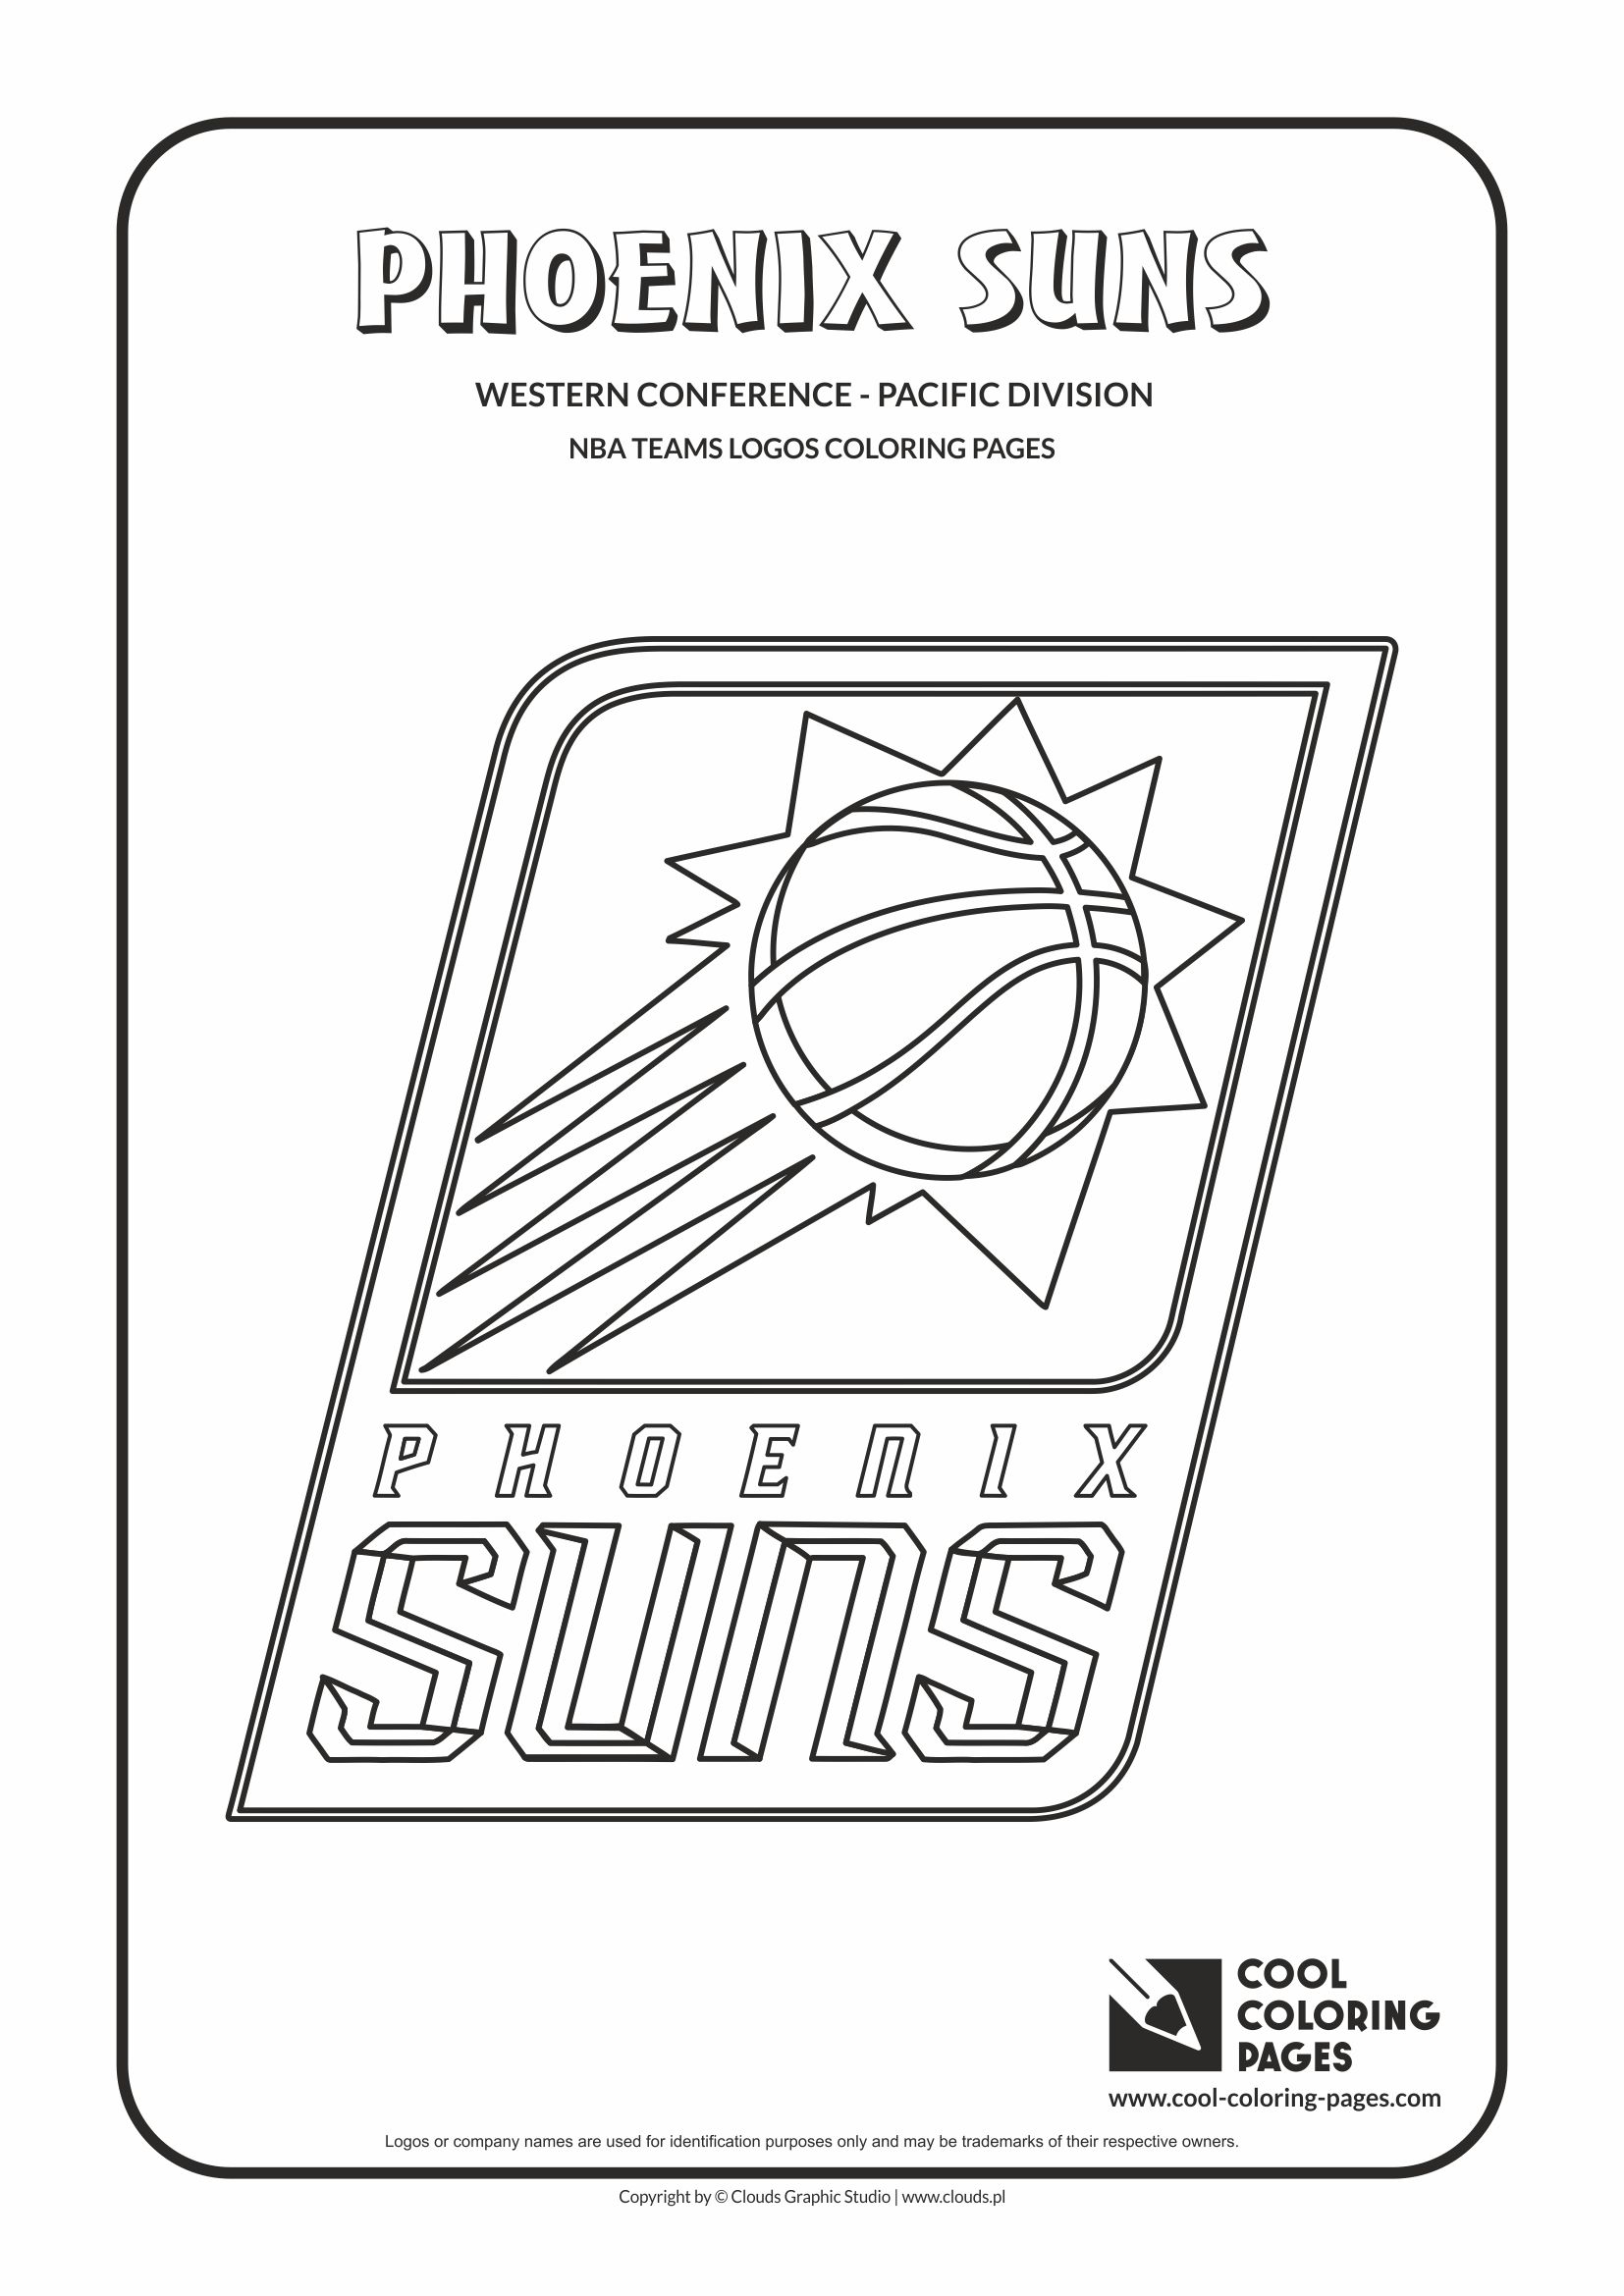 Gambar Phoenix Suns Nba Basketball Teams Logos Coloring Pages Cool ...